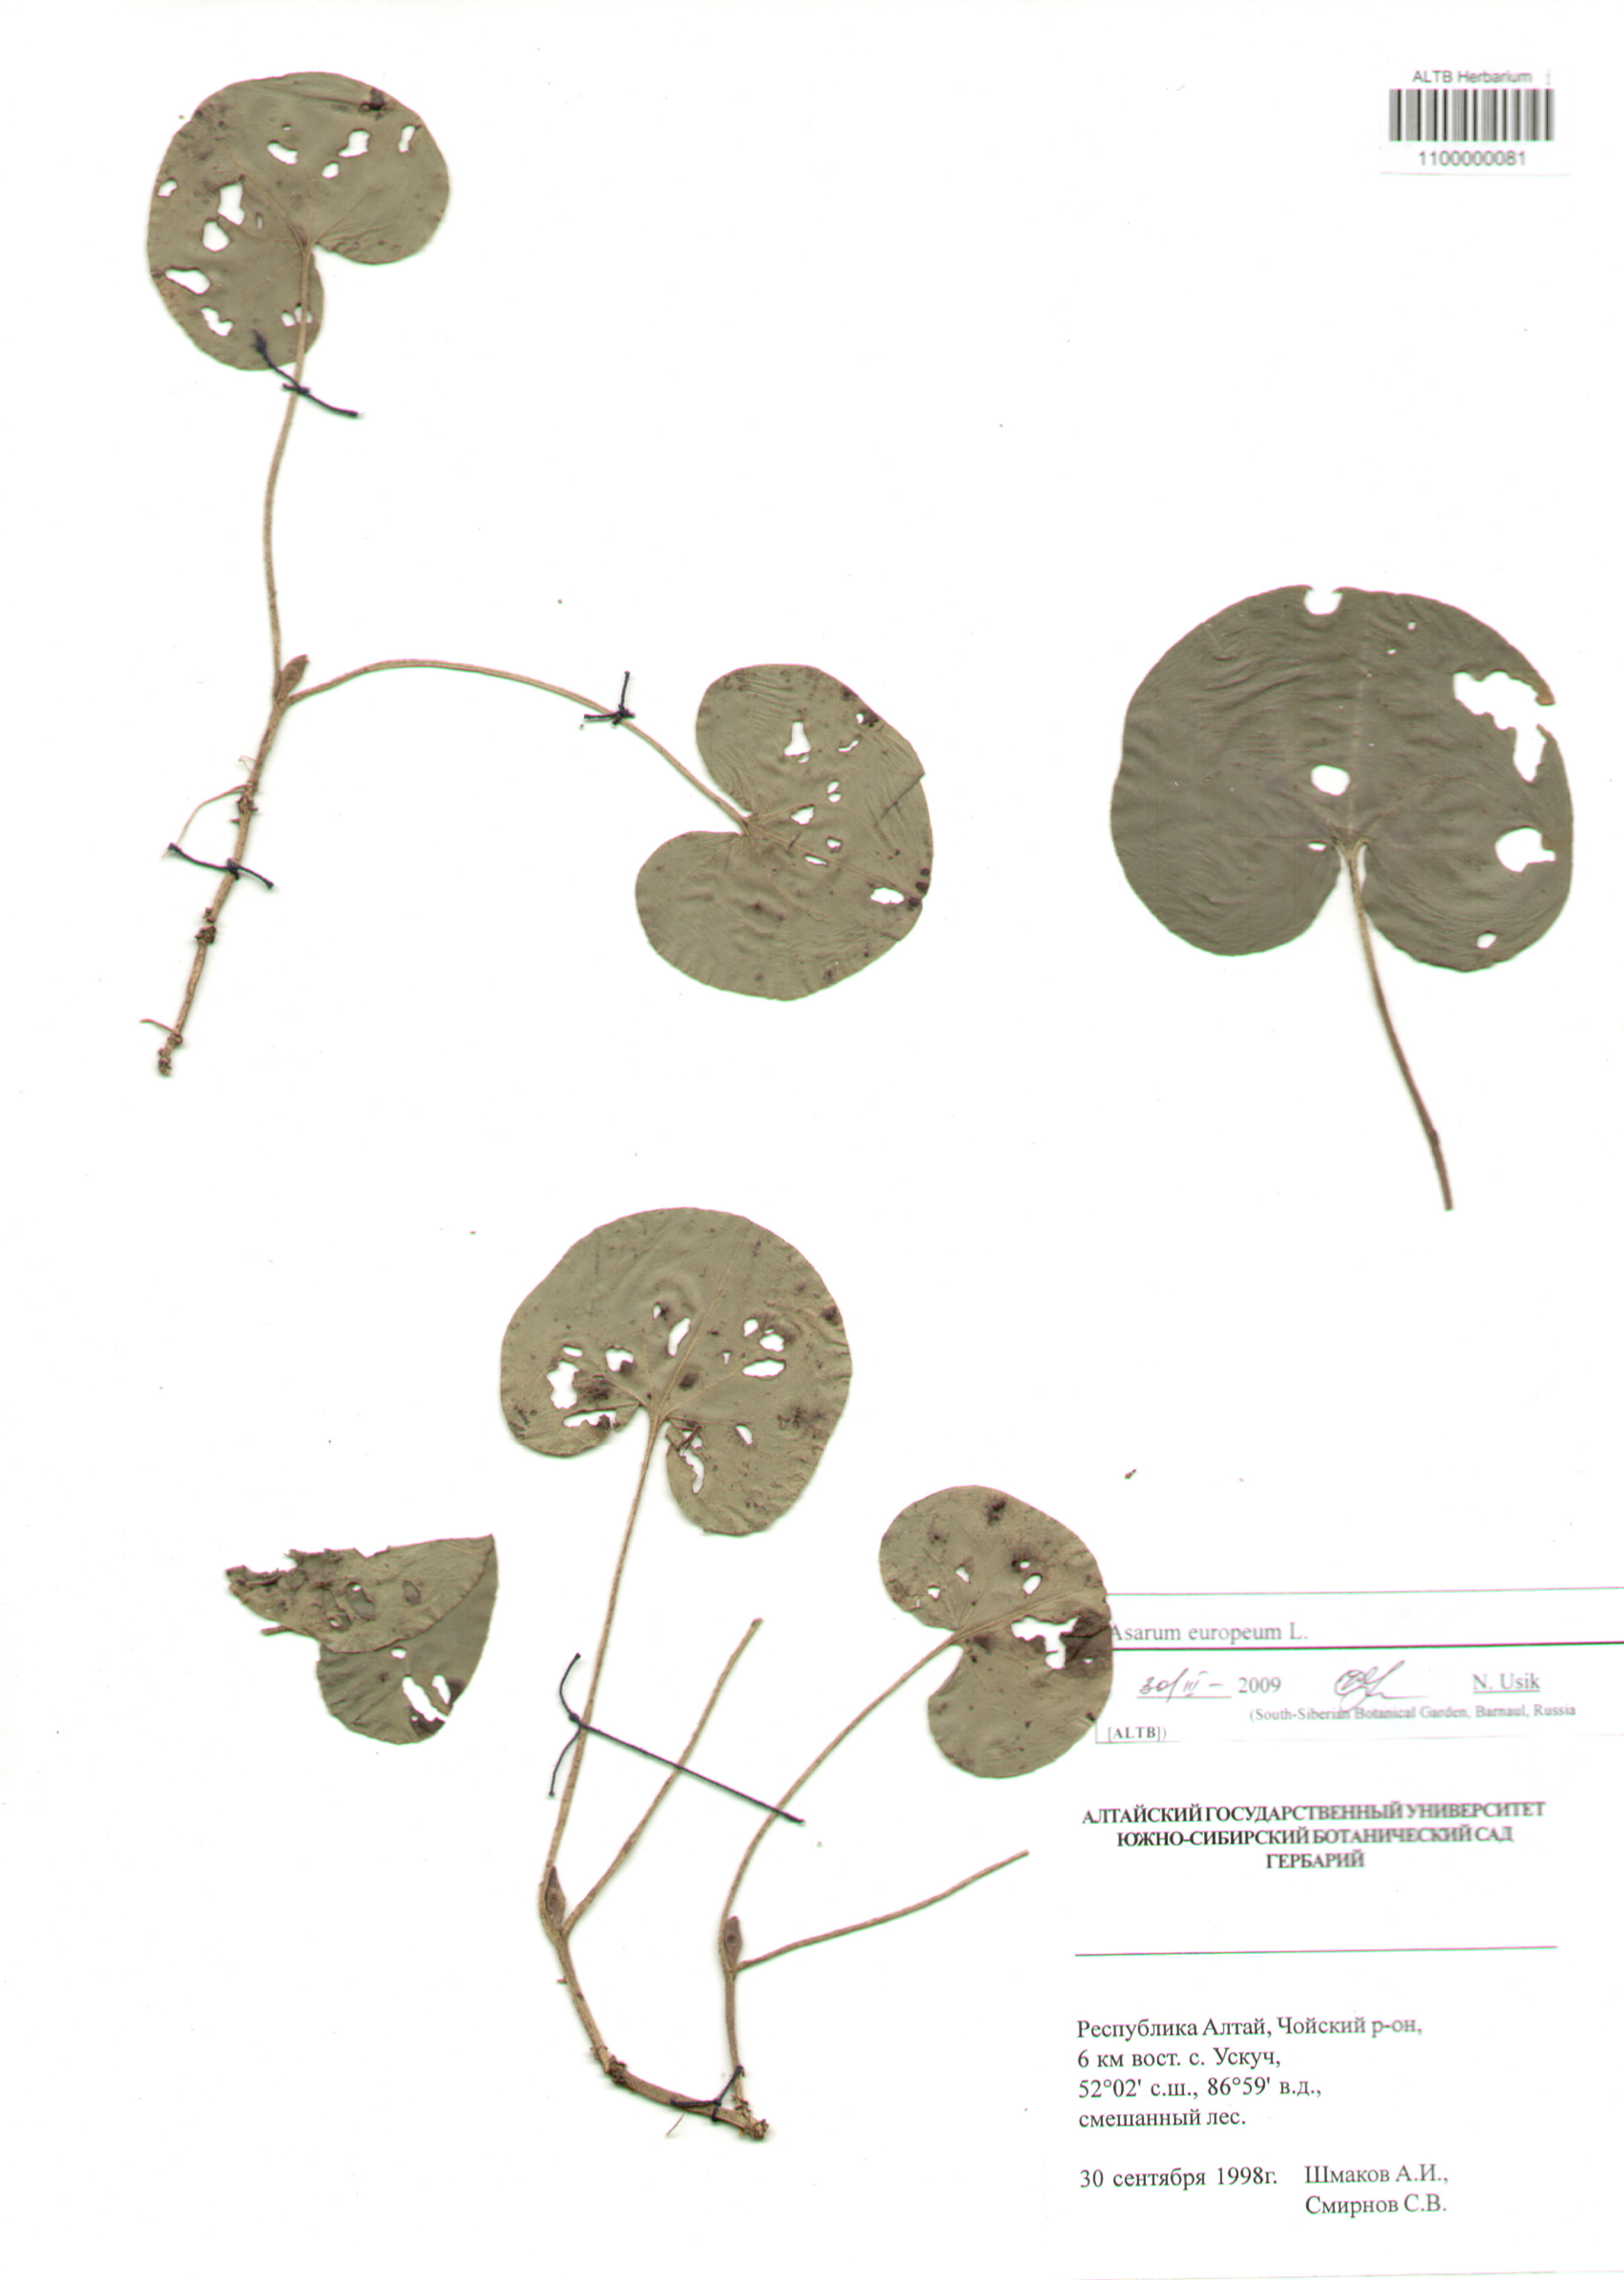 Aristolochiaceae,Asarum europeum L.